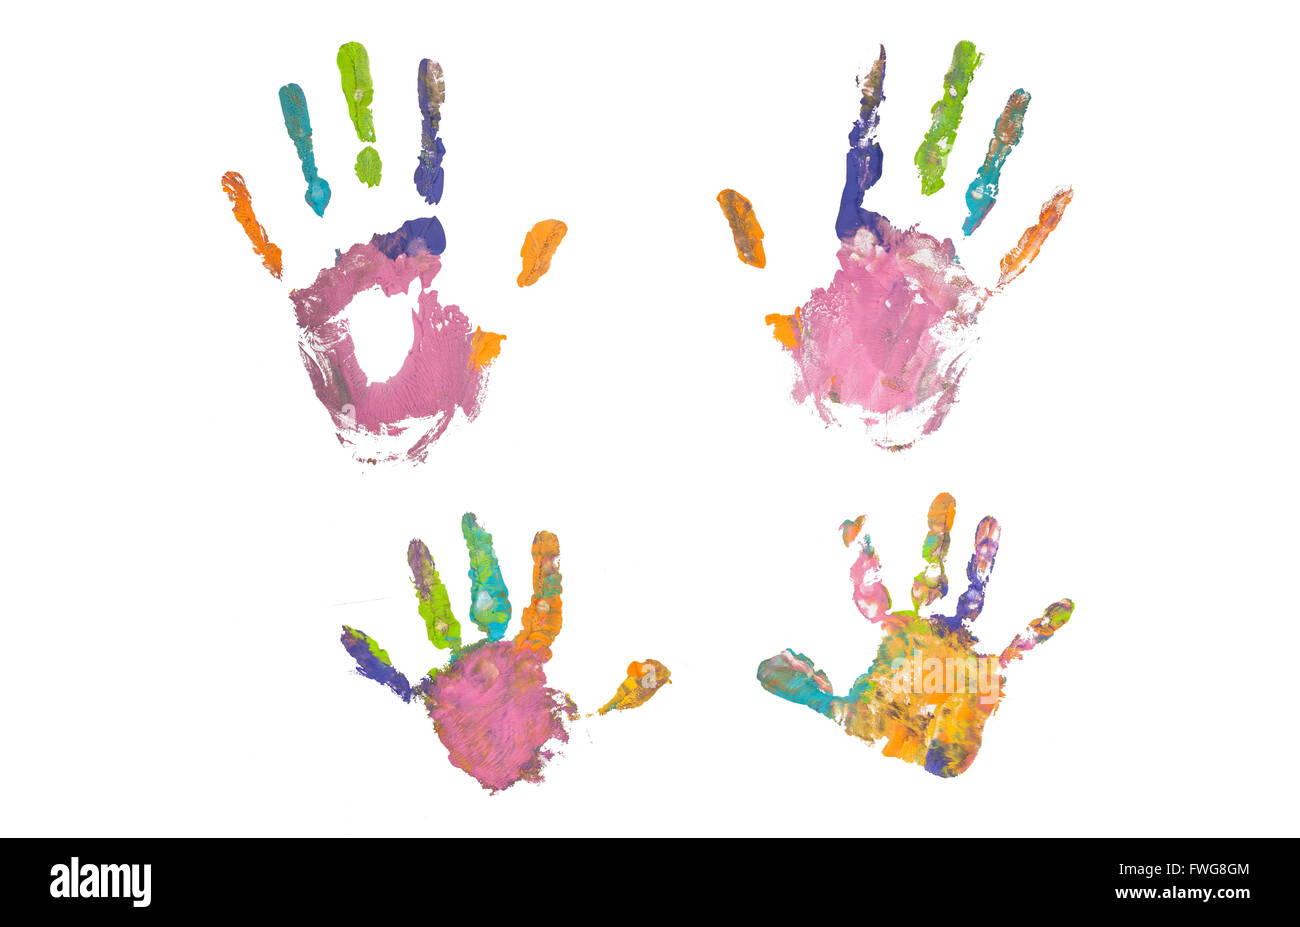 Bunte Handabdrücke von Mutter und Kind auf weißem Hintergrund. Festlegen der regenbogenfarbenen Handabdrücke. Familien-Konzept. Stockfoto